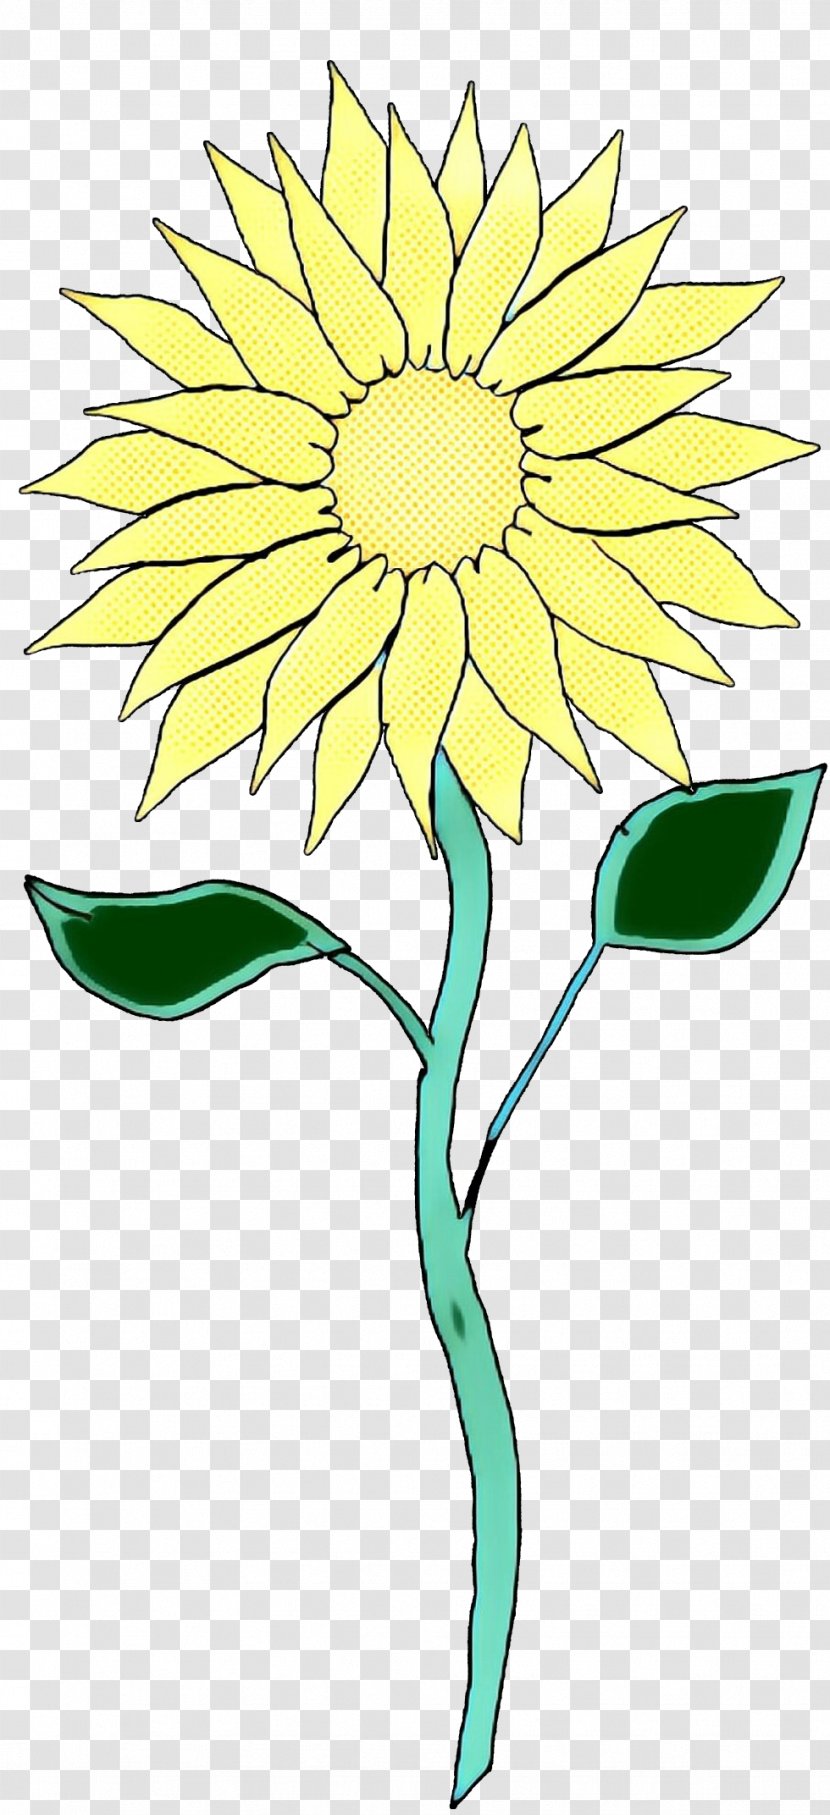 Pop Art Retro Vintage - Sunflower - Herbaceous Plant Daisy Family Transparent PNG